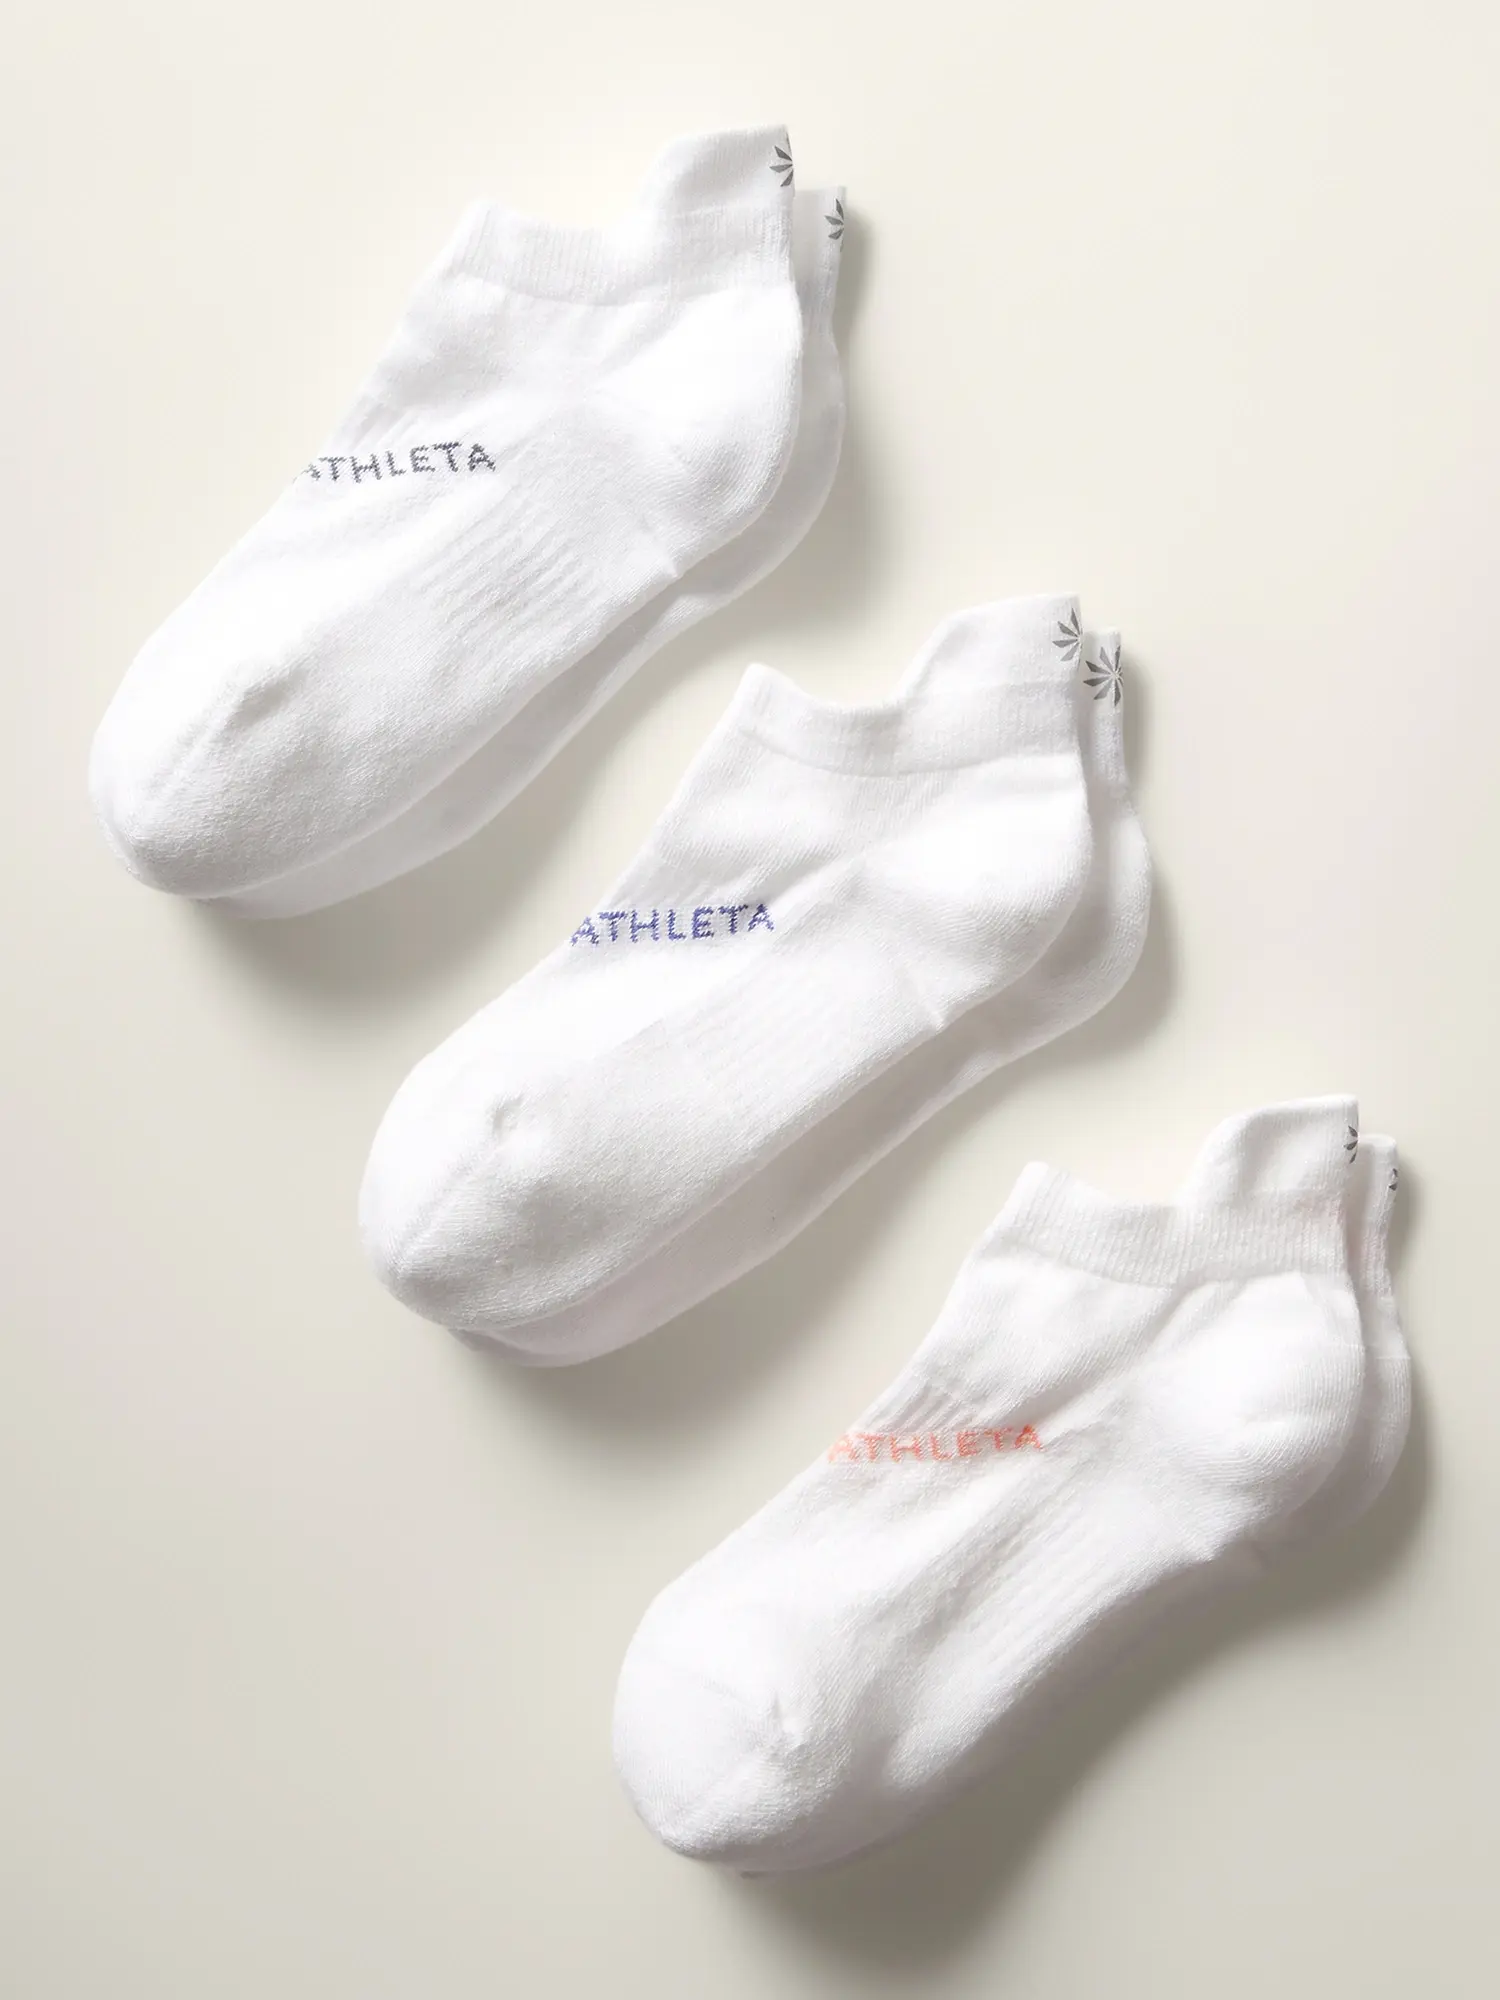 Athleta Everyday Ankle Sock 3-Pack white. 1